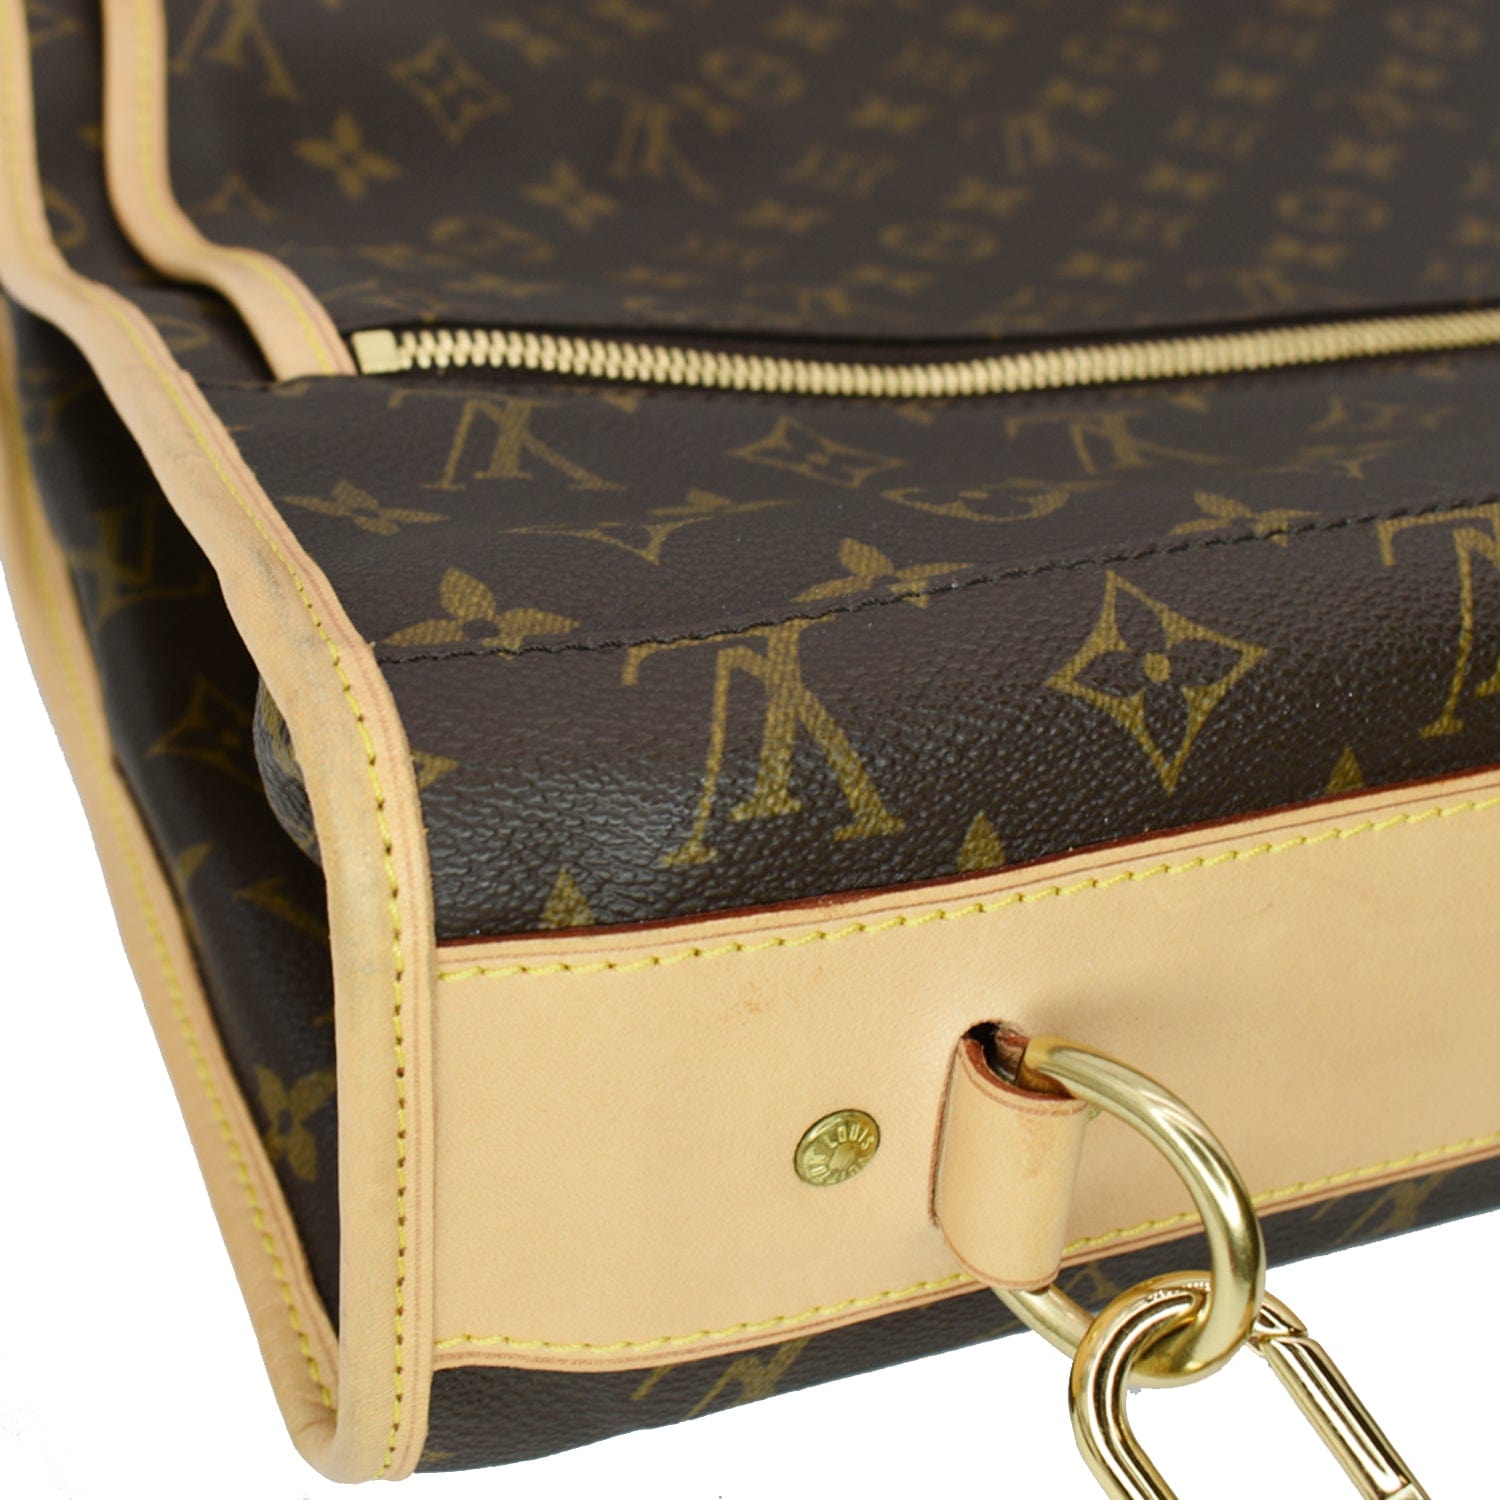 Garment cloth travel bag Louis Vuitton Brown in Cloth - 35041513